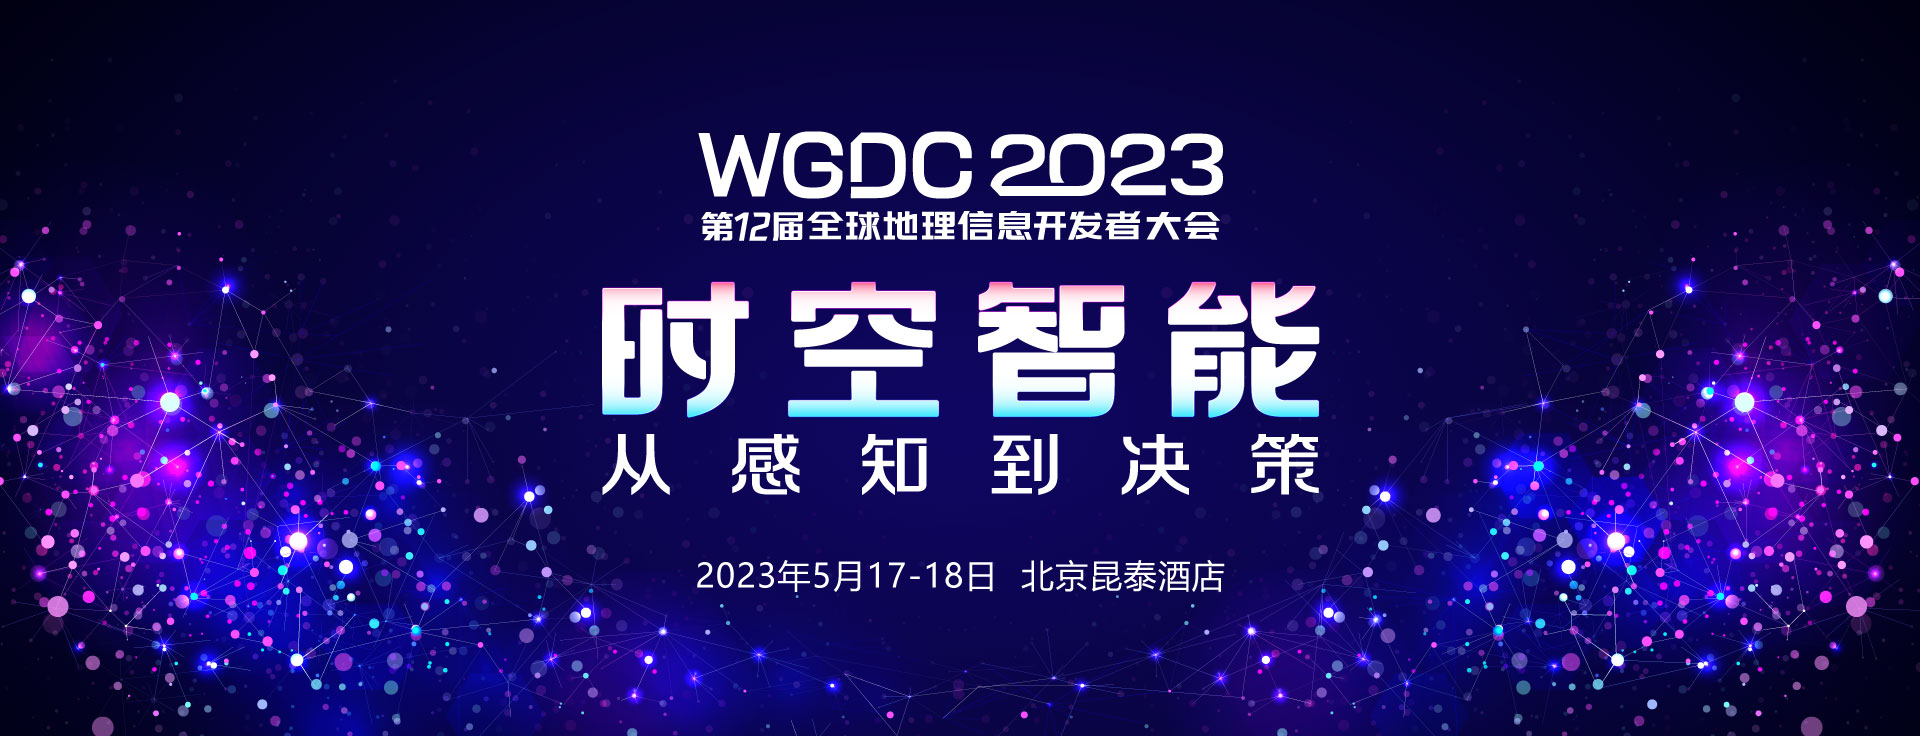 WGDC2023第12届全球地理信息开发者大会